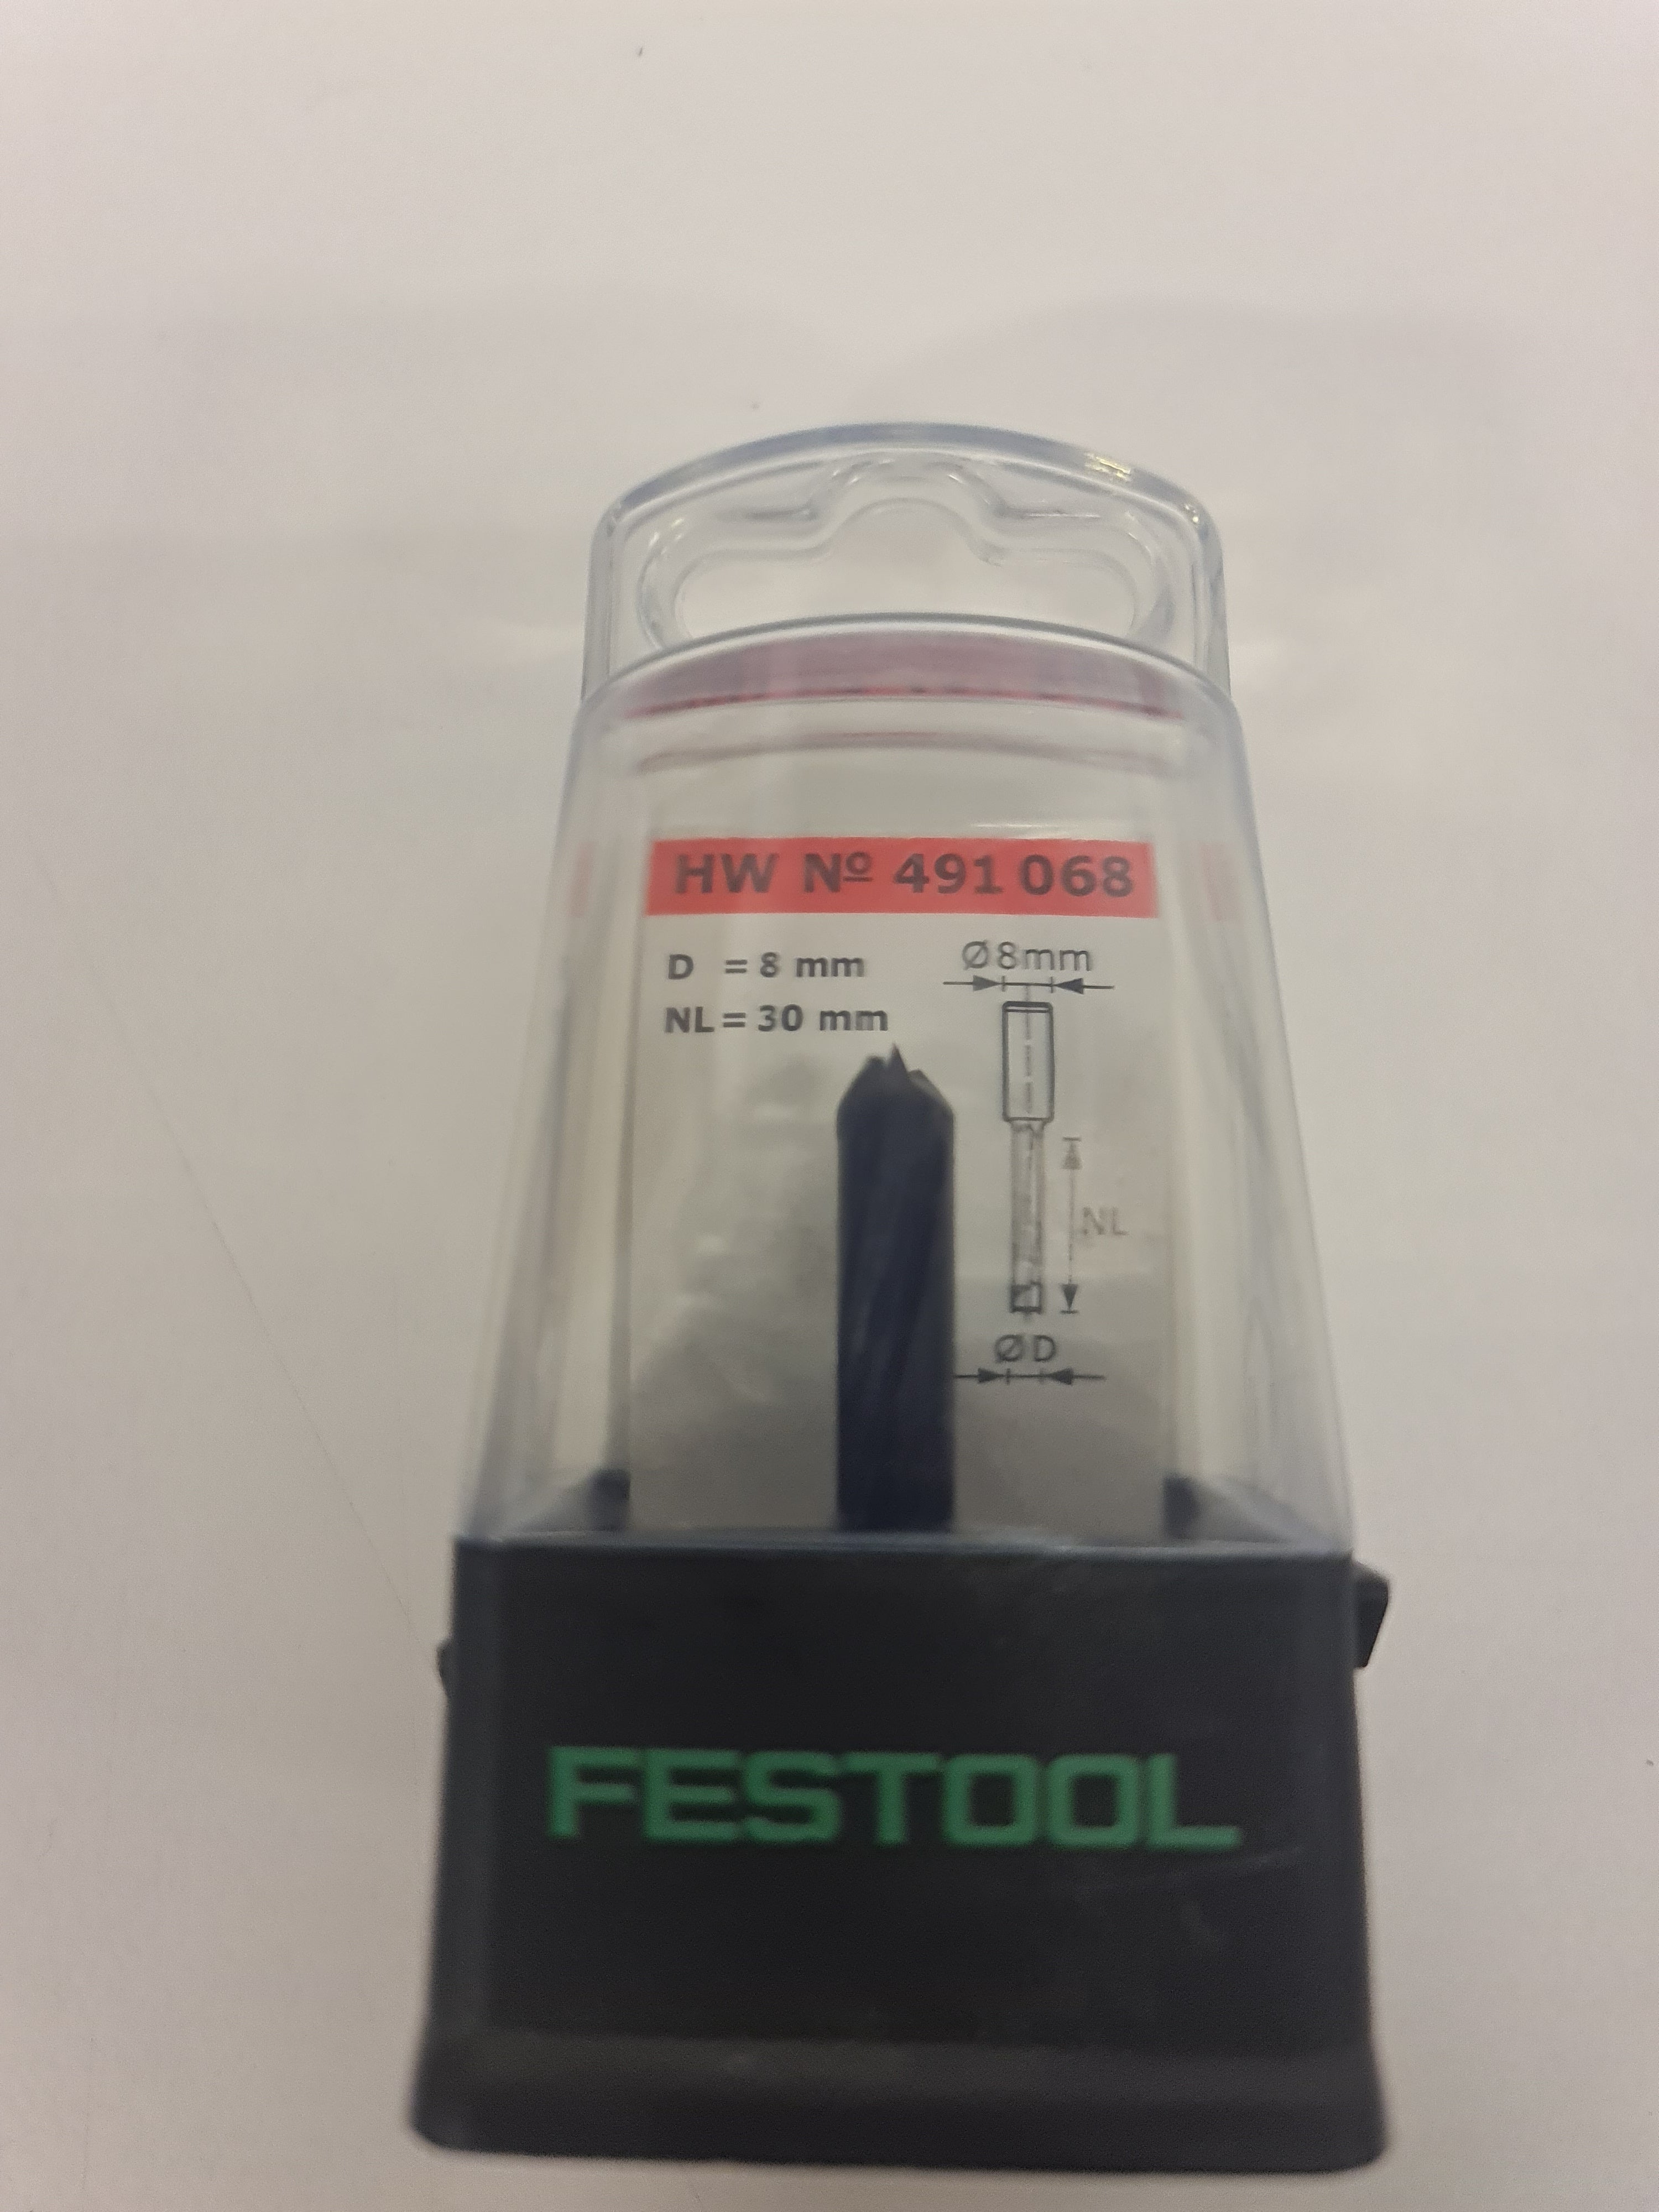 Festool 491068 Dowel Drill